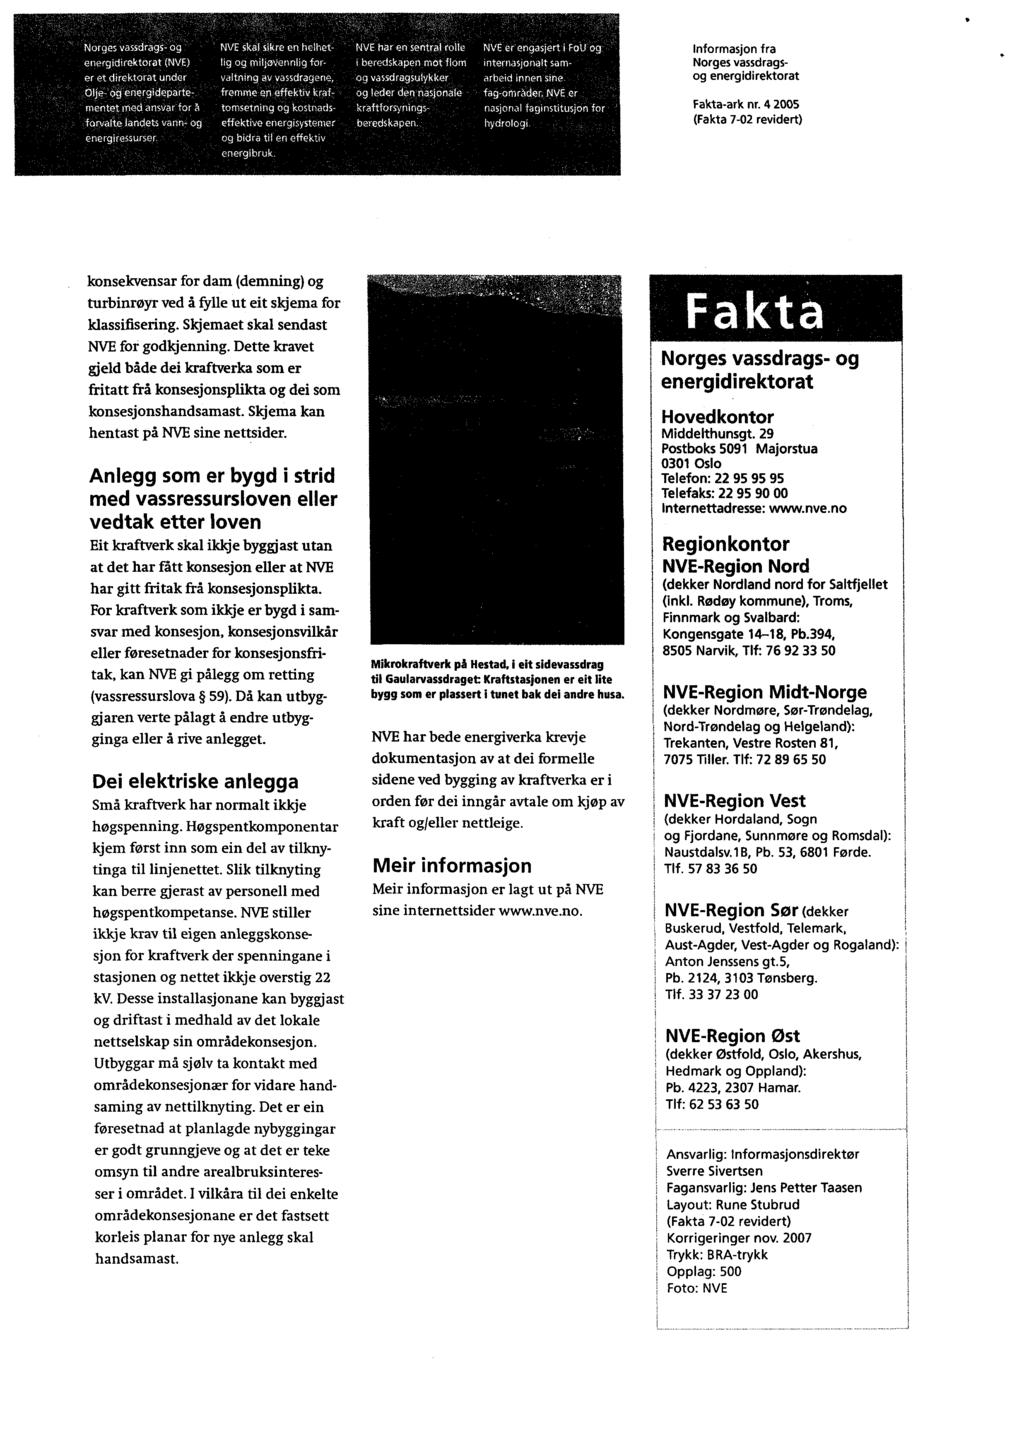 11,. 11. Informasjon fra Norges vassdragsog energ idirektorat. - Fakta-ark nr. 4 2005 (Fakta 7-02 revidert). konsekvensar for dam (demning) og turbinrøyr ved å fylle ut eit skjema for klassifisering.